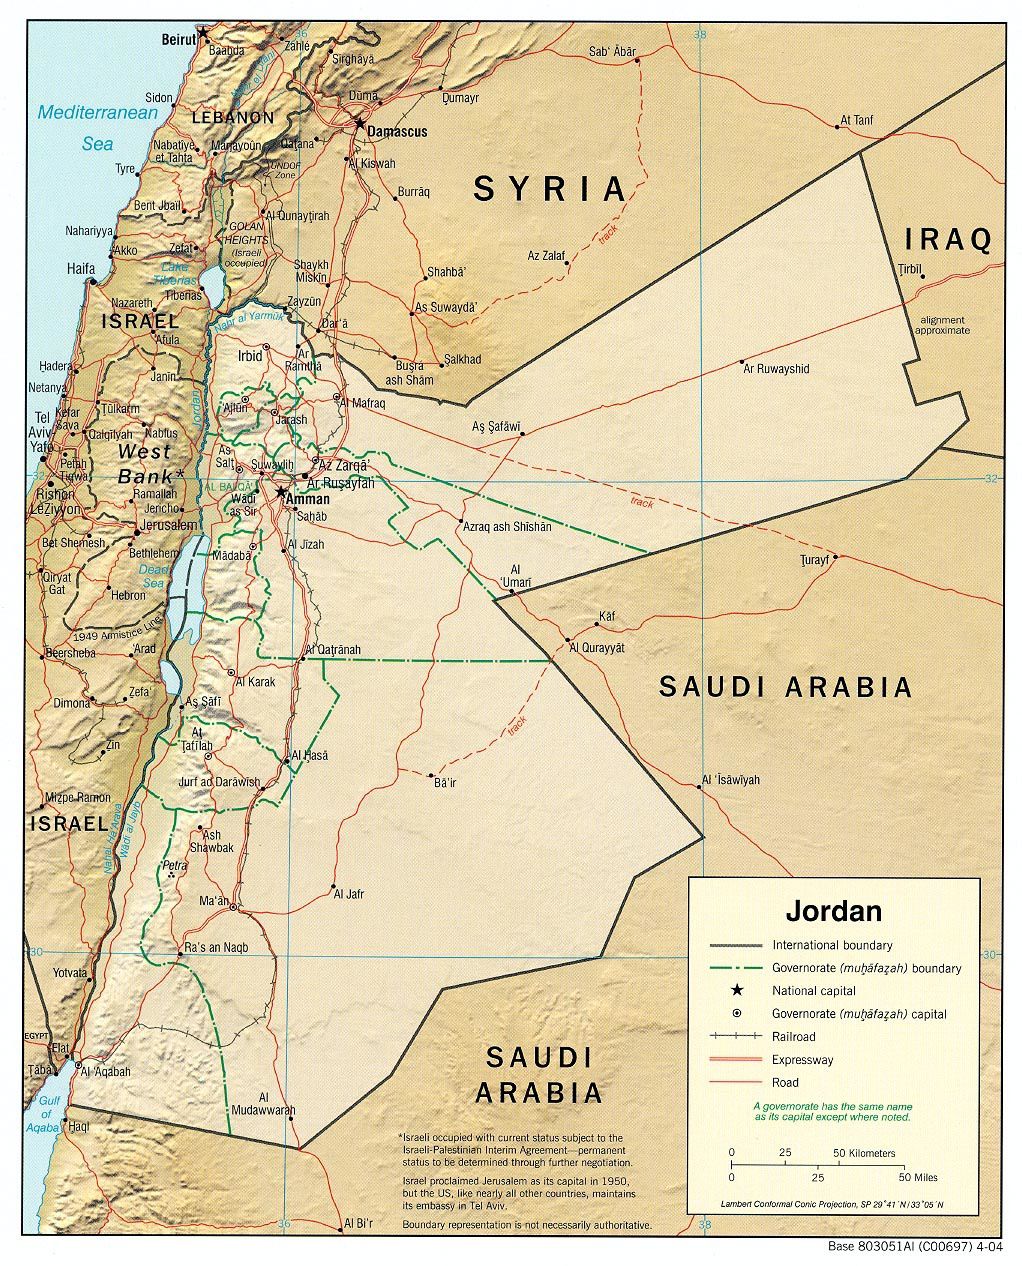 Jordanie-Israel-Mer-Morte-et-regions-BlogOuvert.jpg